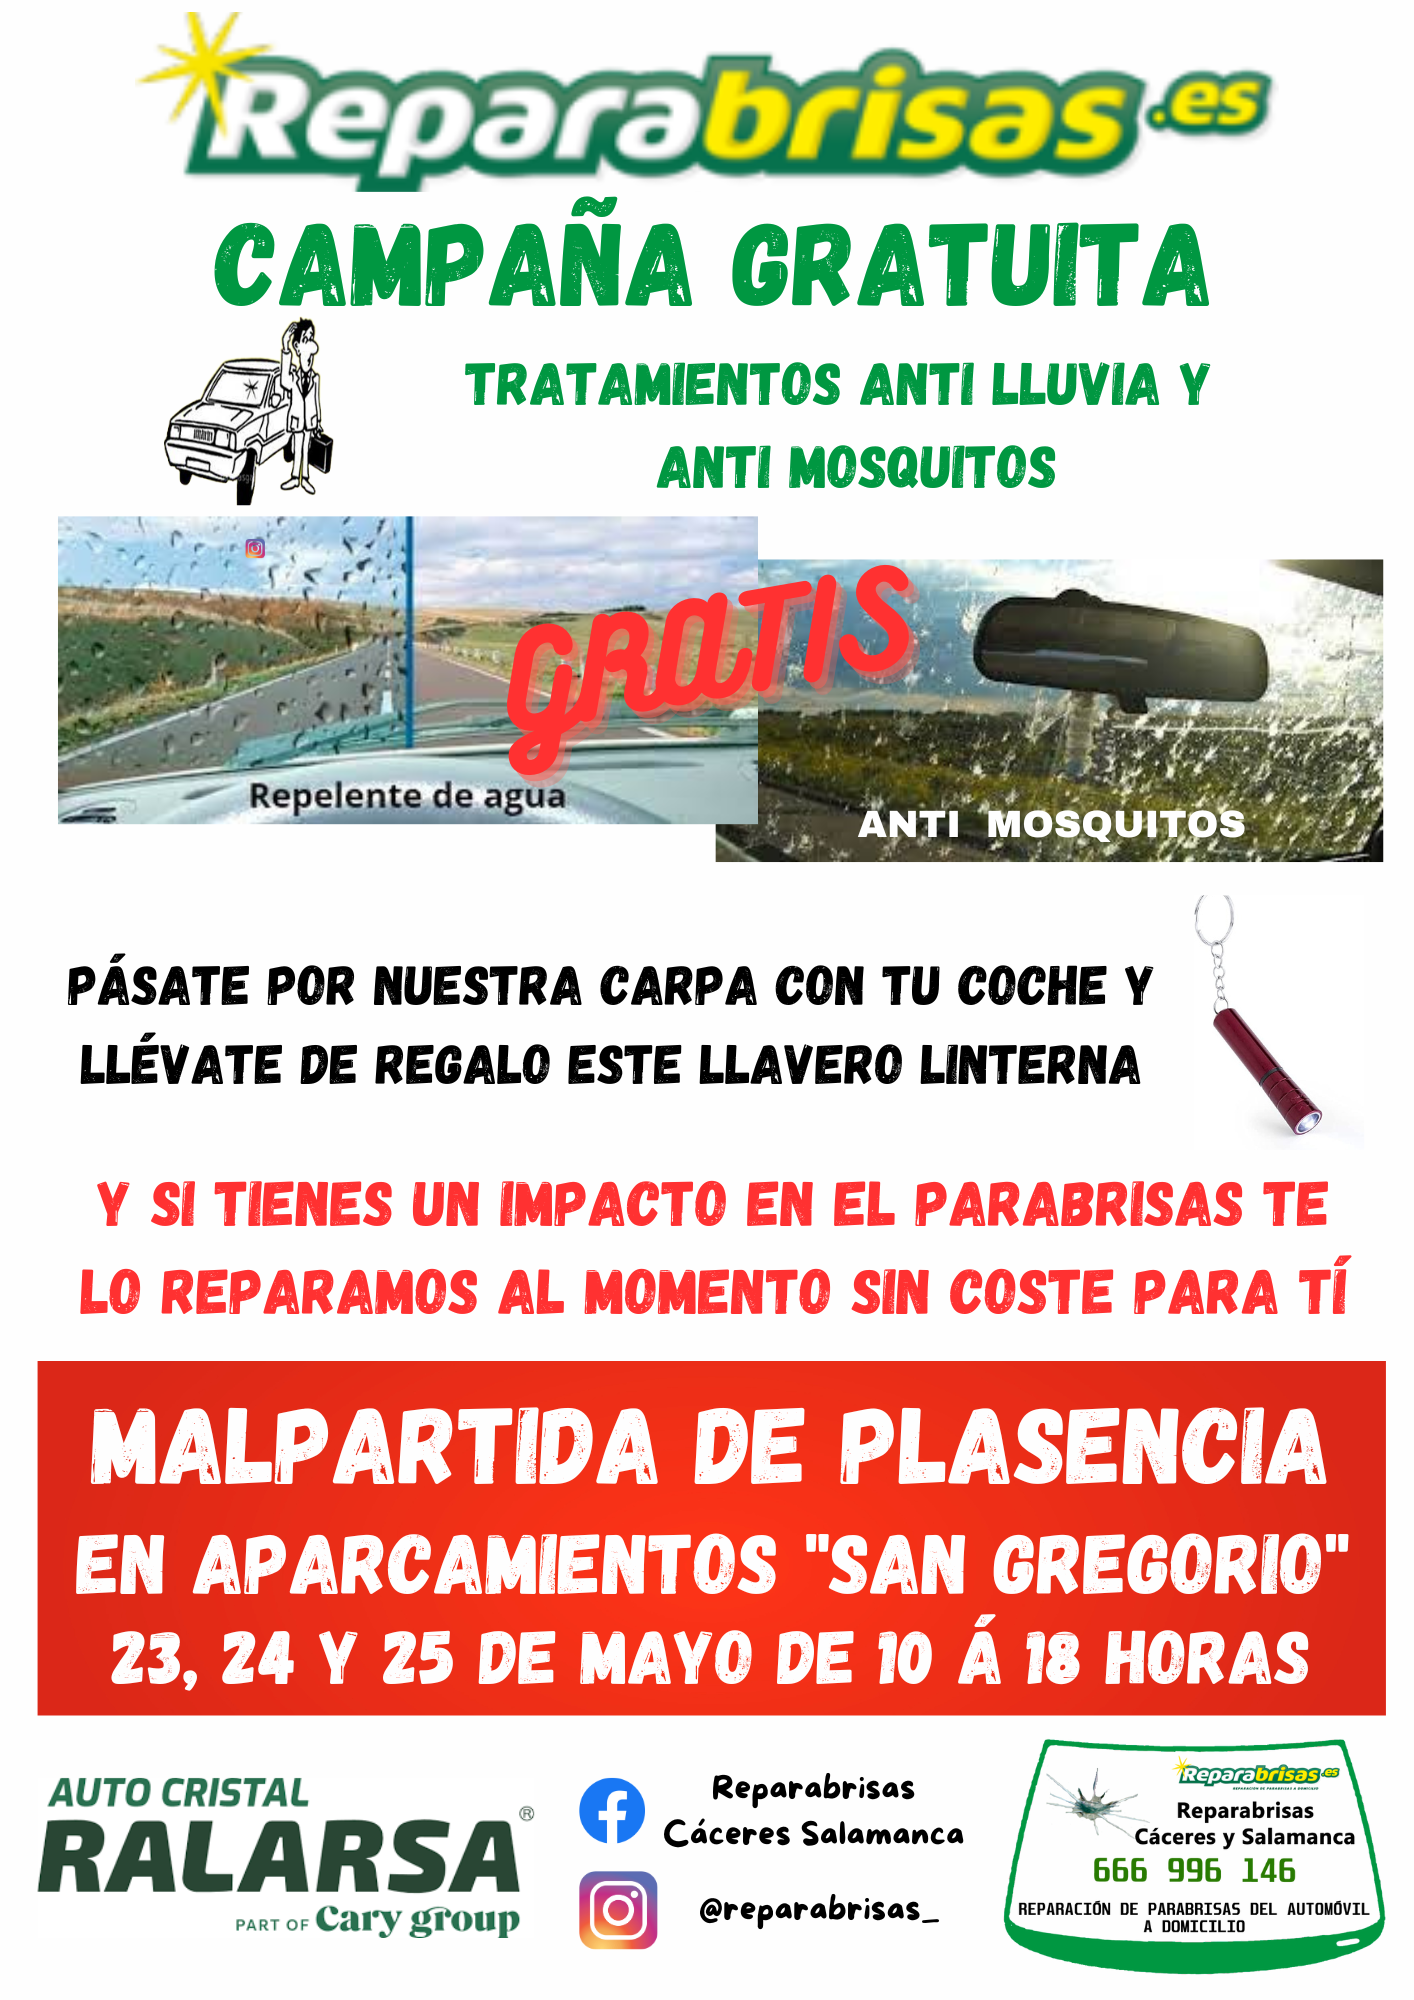 Campaña gratuita de tratamiento anti mosquitos y antilluvia –